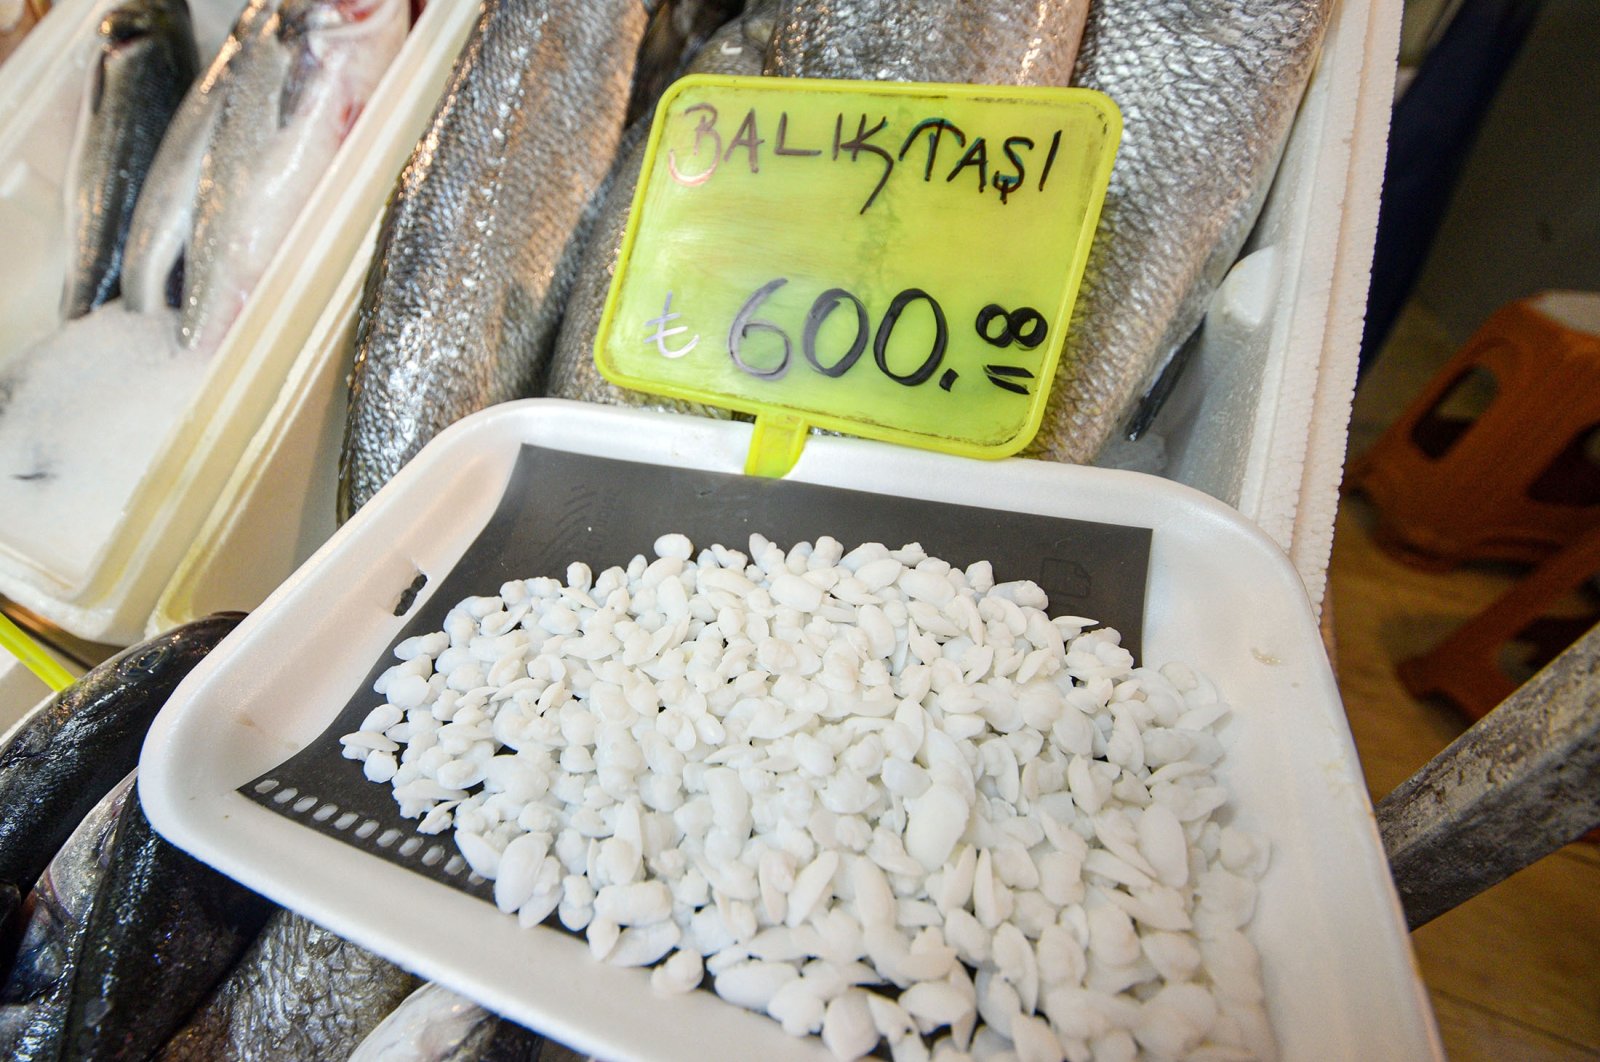 Otolith stones from the shi drum fish sold for TL 600 per kilo, Antalya, Turkey, Sept. 9, 2021. (Tolga Yildirim / DHA)